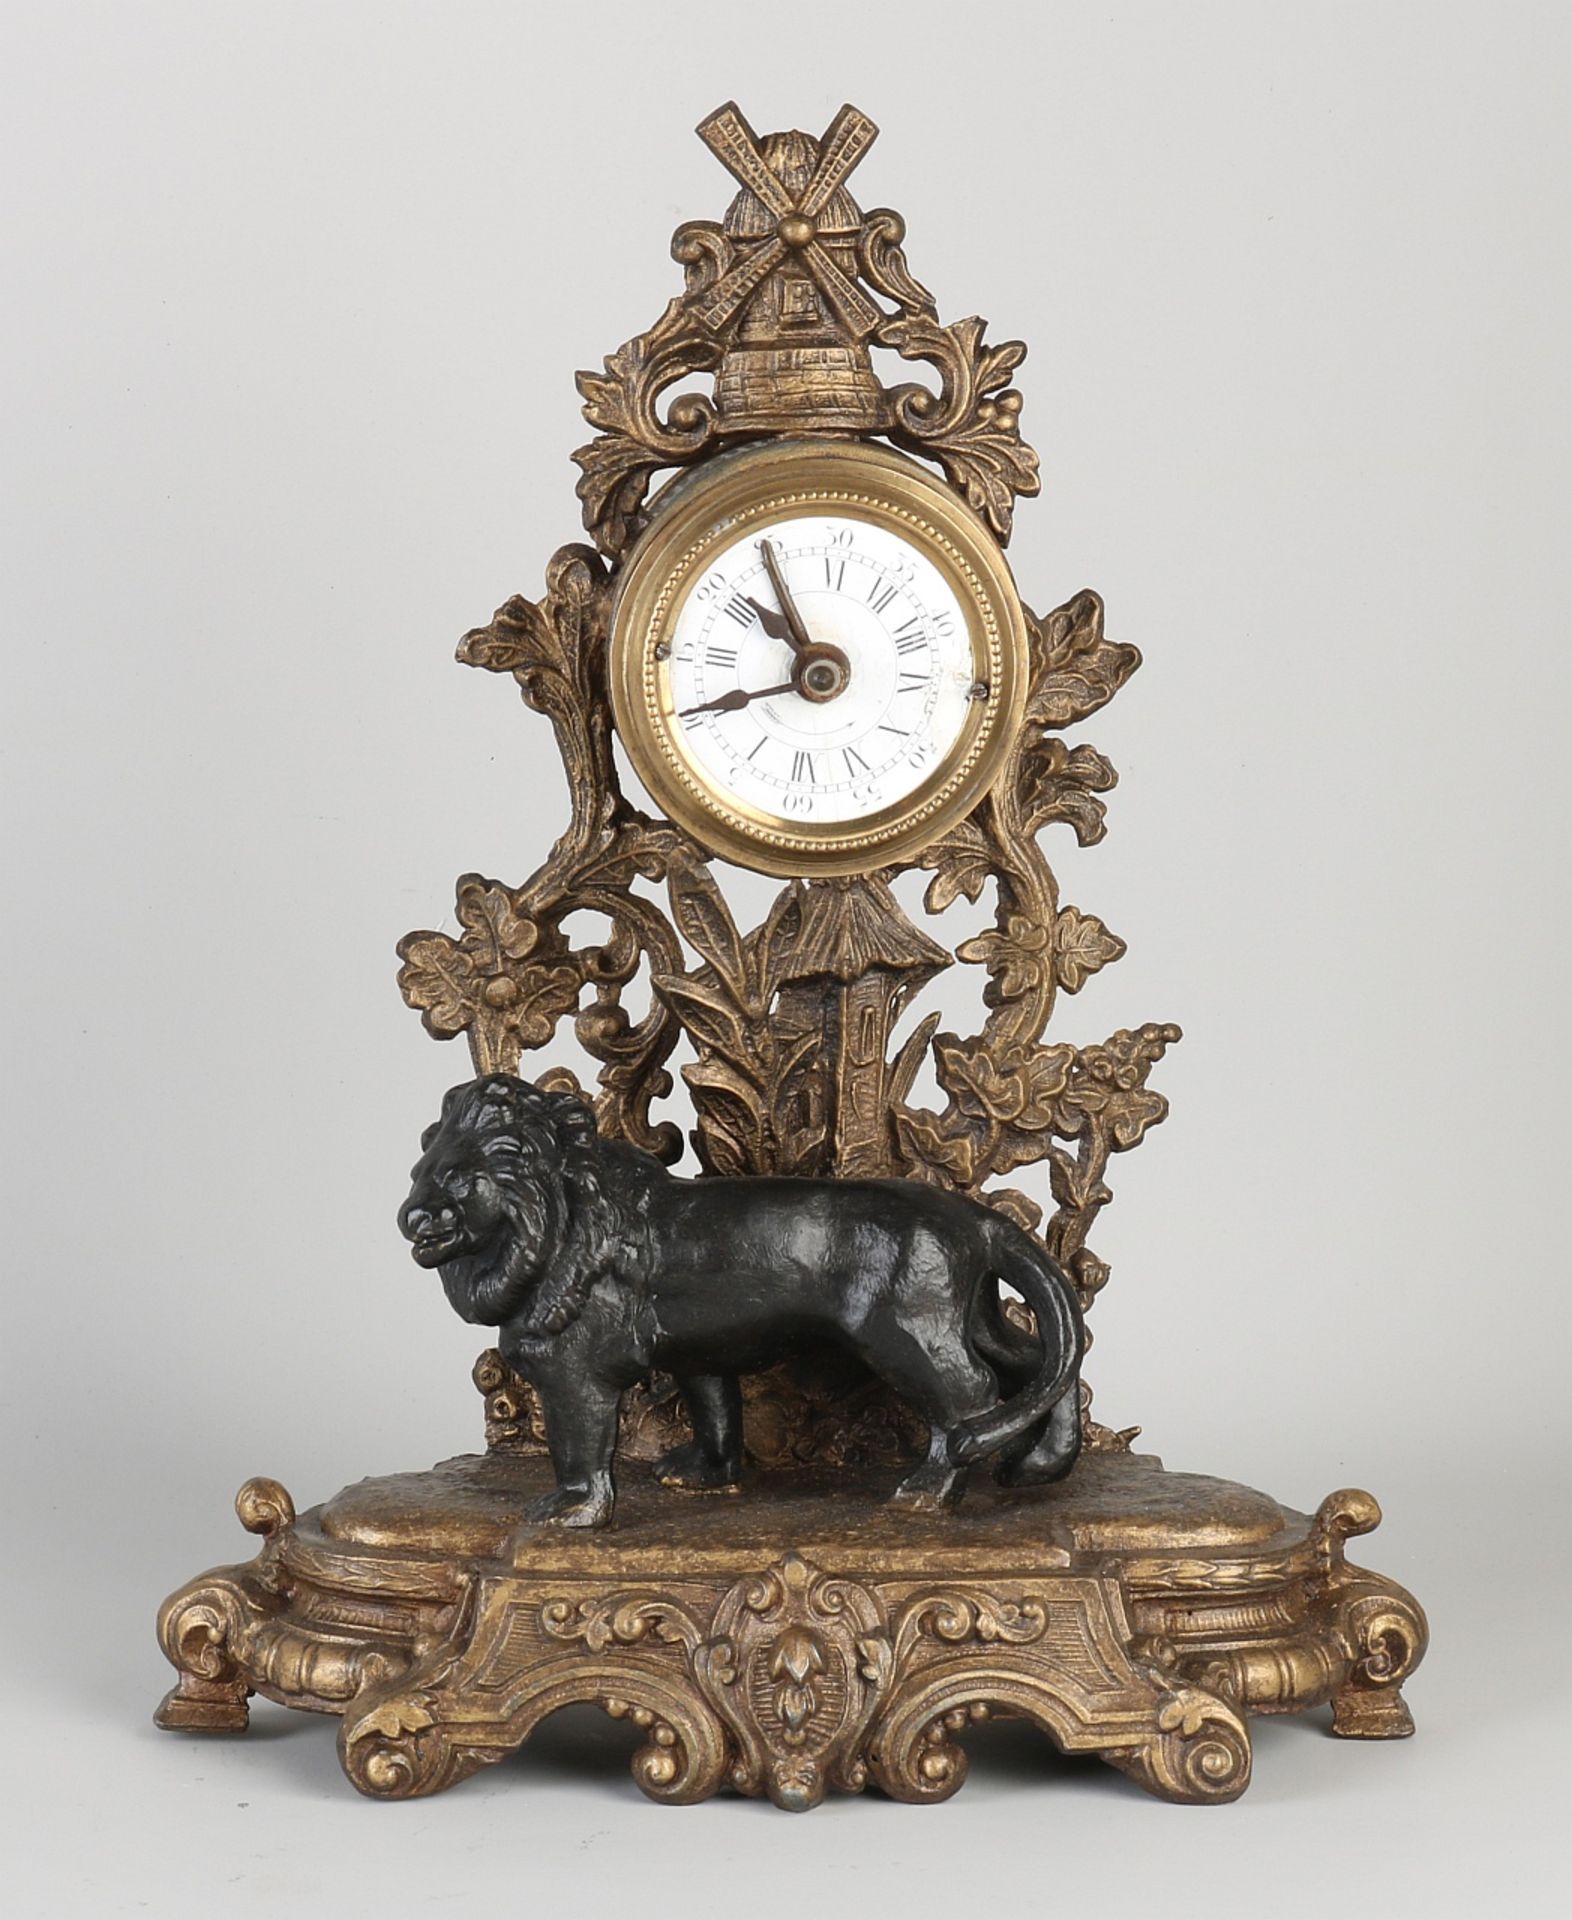 Rare antique alarm clock with lion